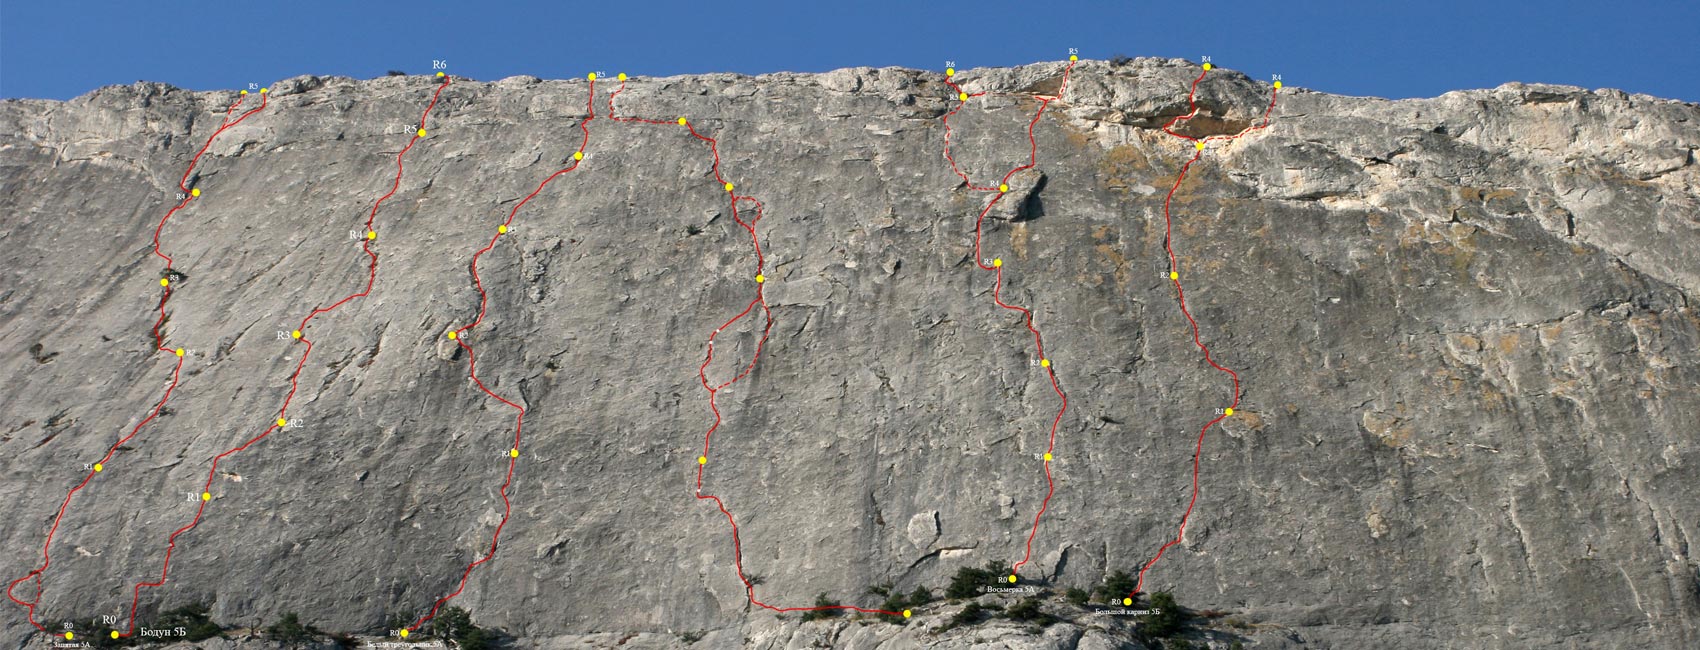 Обозначенные альпинистские маршруты на горе Сокол в Судаке